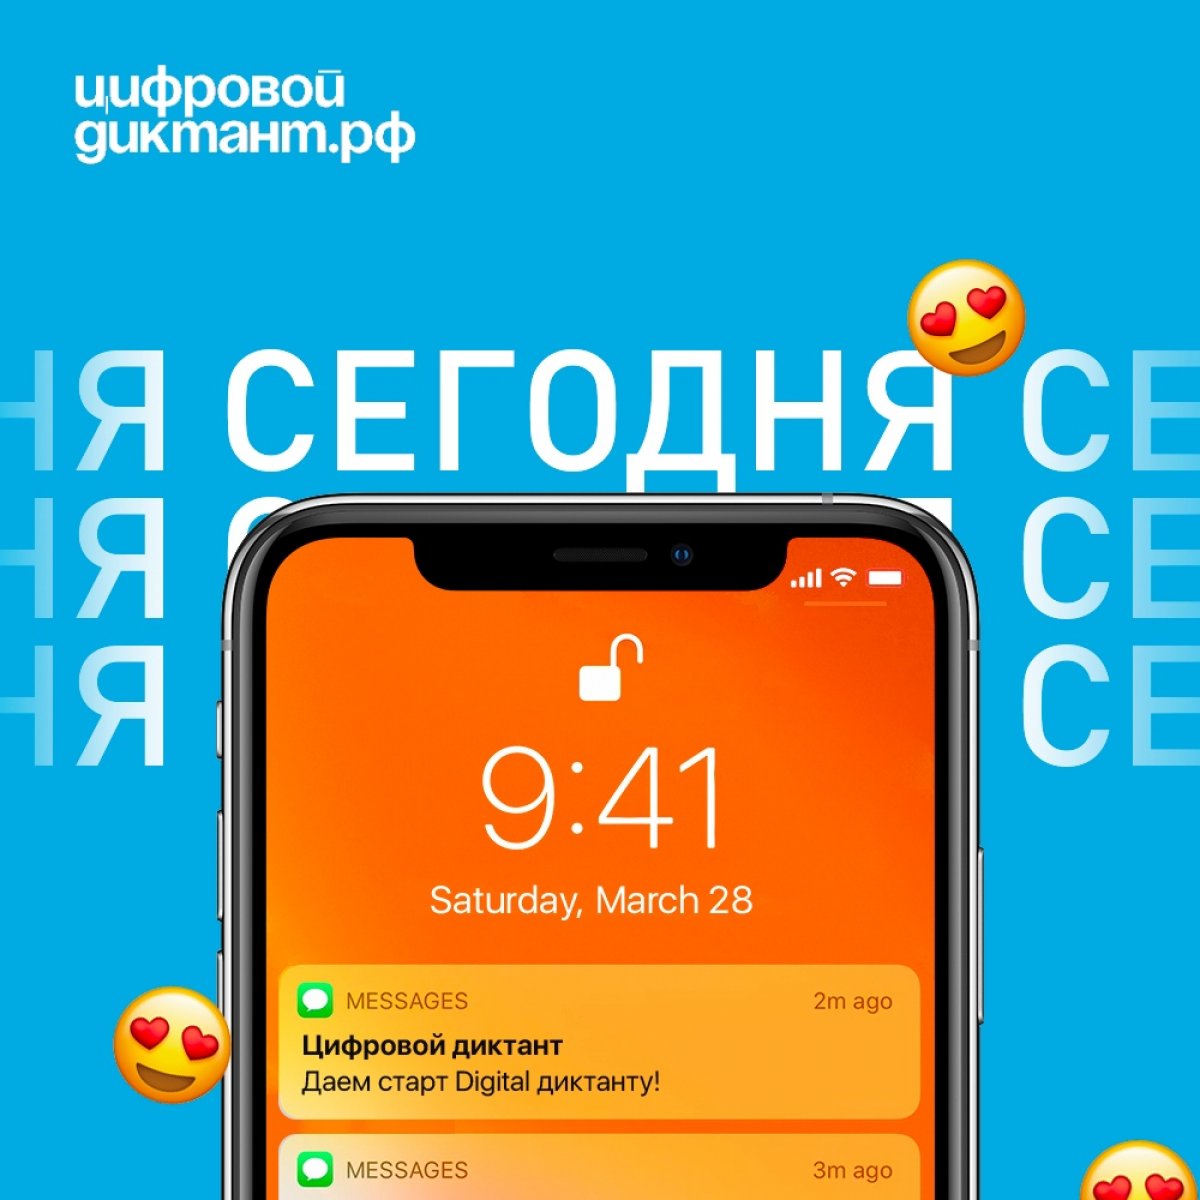 Друзья, рады вам сообщить, что с 28 марта по 11 апреля мы примем участие в Цифровом Диктанте – всероссийской образовательной акции по определению уровня цифровой грамотности!